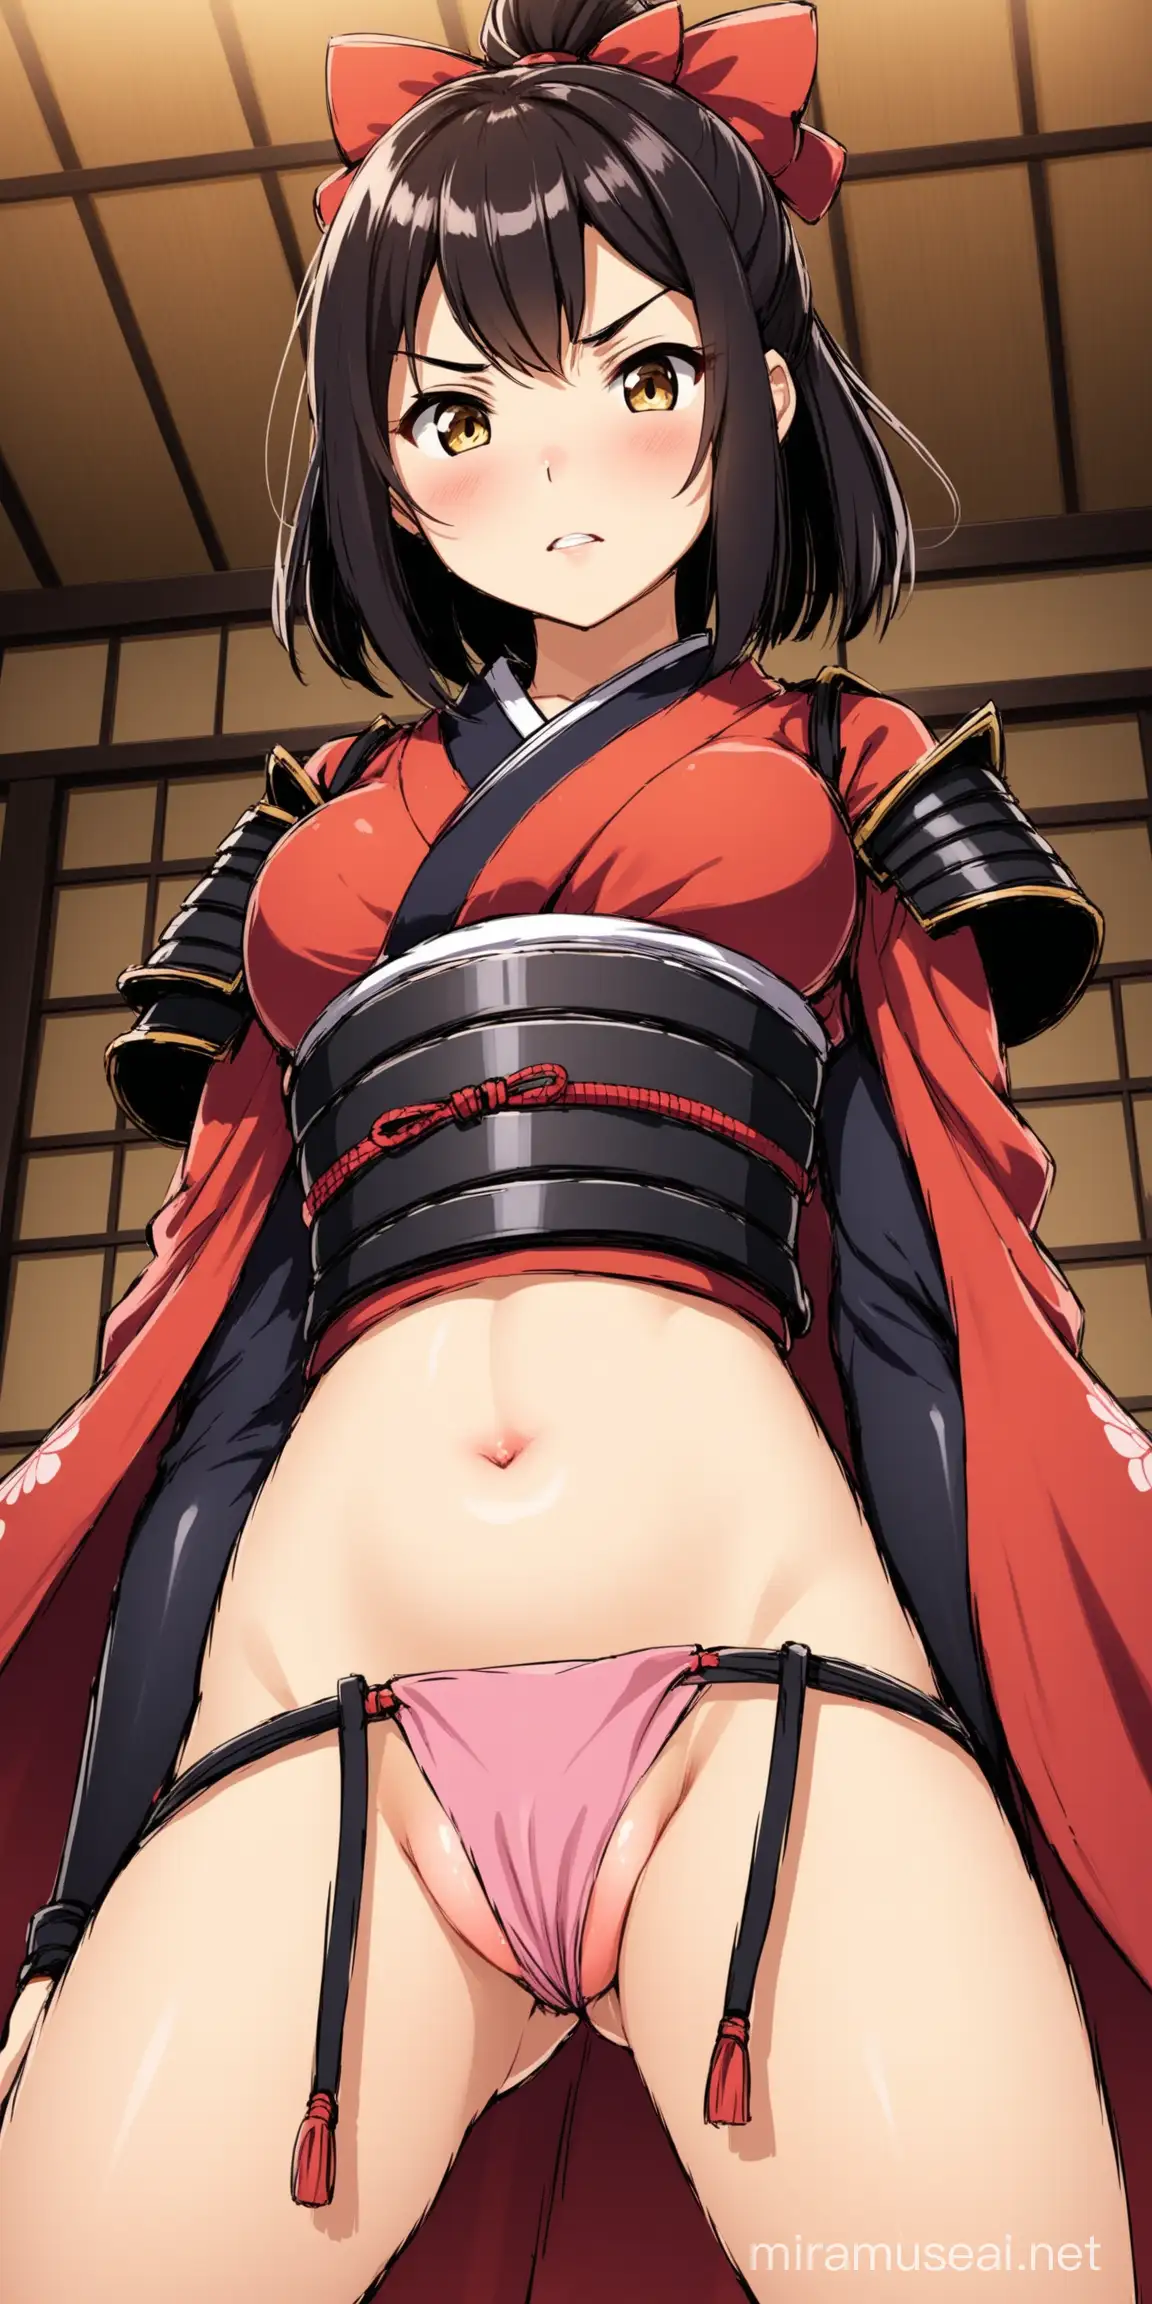 Chica animada, pechos medianos, traje de samurai, enseñando la vagina 